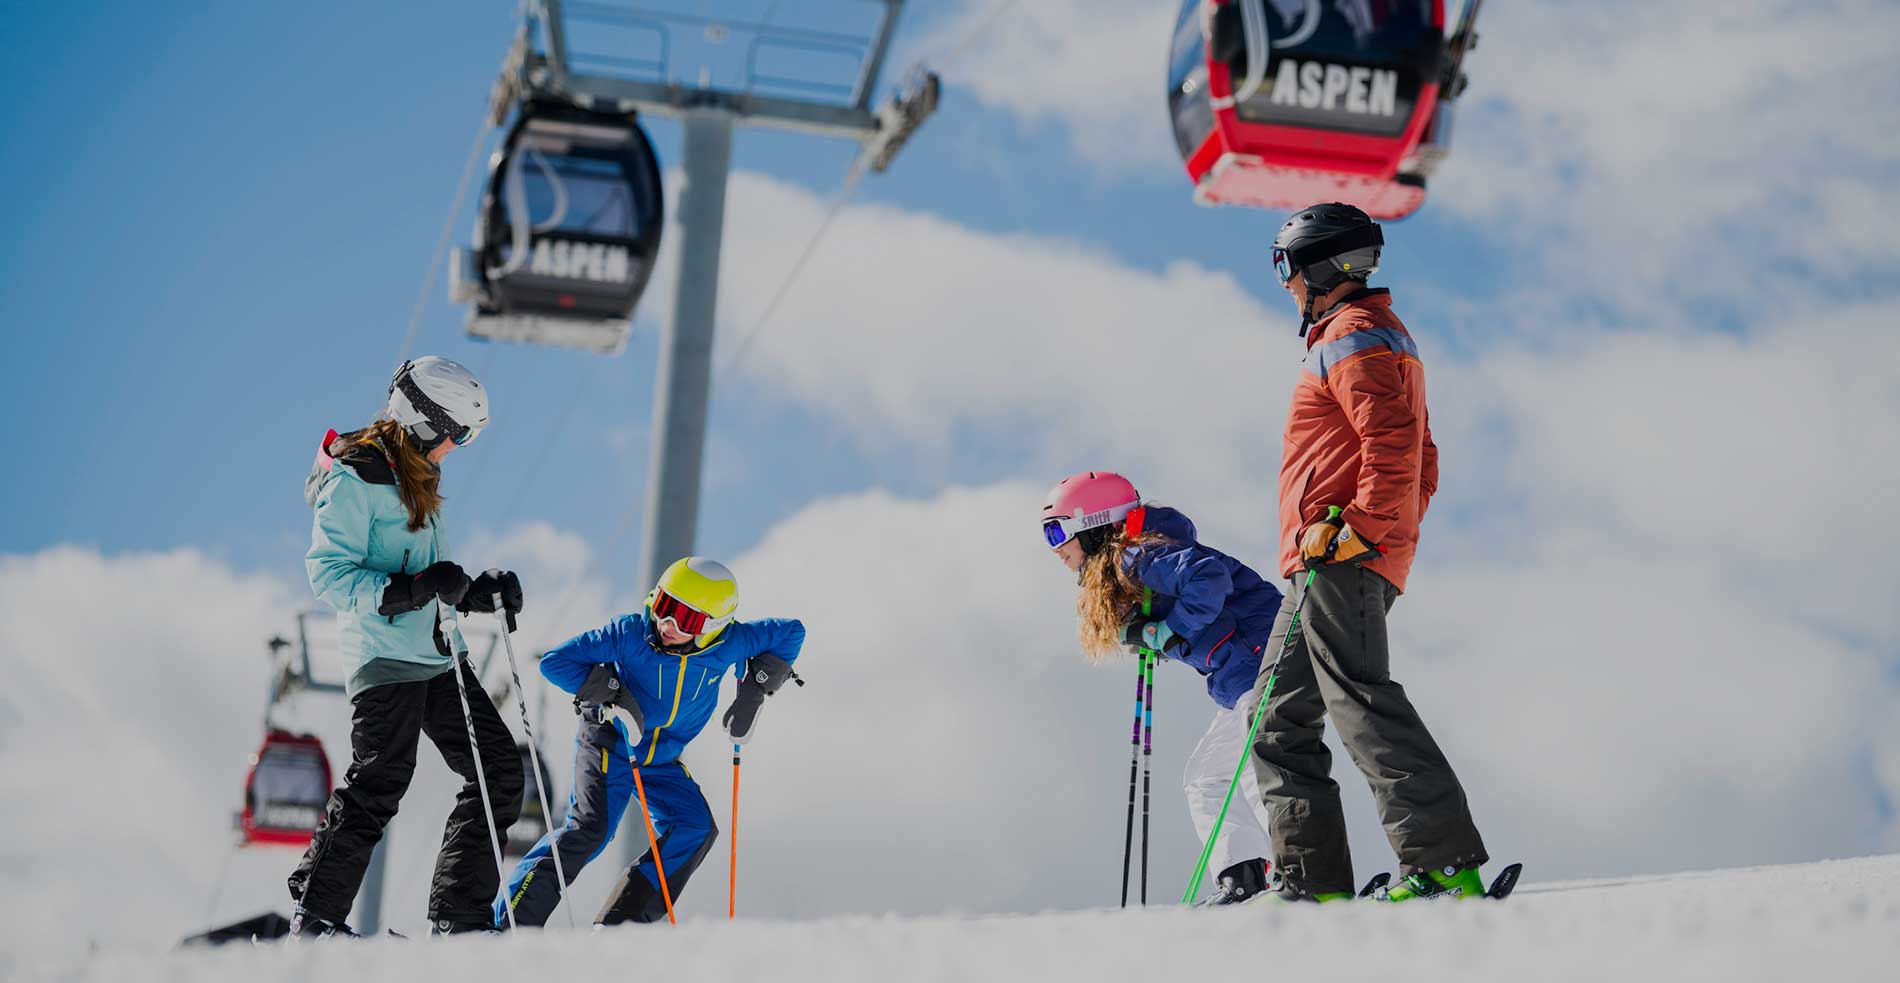 阿斯本雪堆山滑雪村冬季家庭度假指南